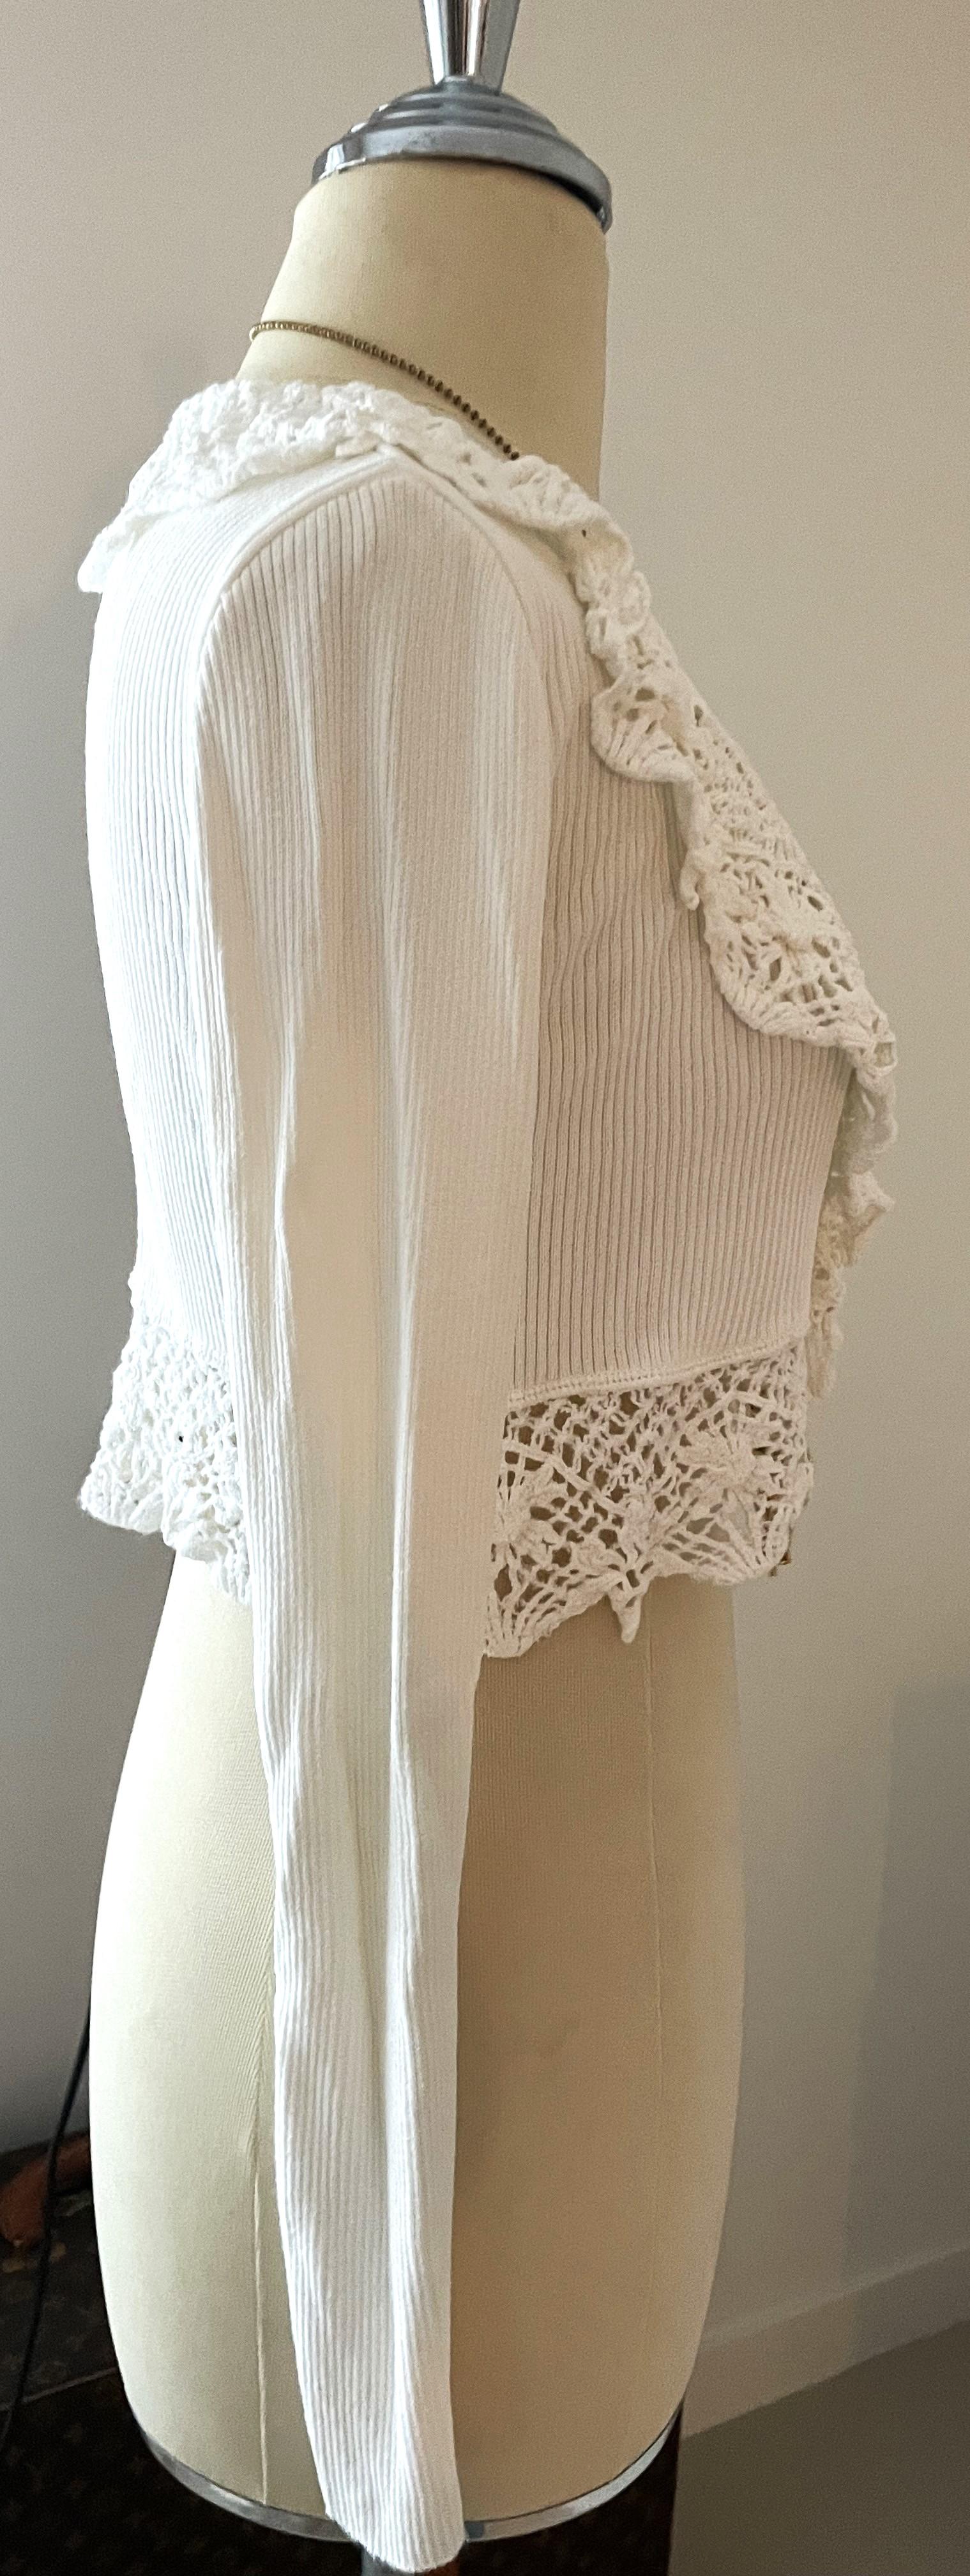 Moschino Couture Cardigan White Crocheted ist ein schönes Stück der 90er Jahre und sehr gut erhalten. Elegant, frisch und sofort tragbar!


Moschino ist eine italienische Luxusmodemarke, die für ihre verspielten und unkonventionellen Designs bekannt